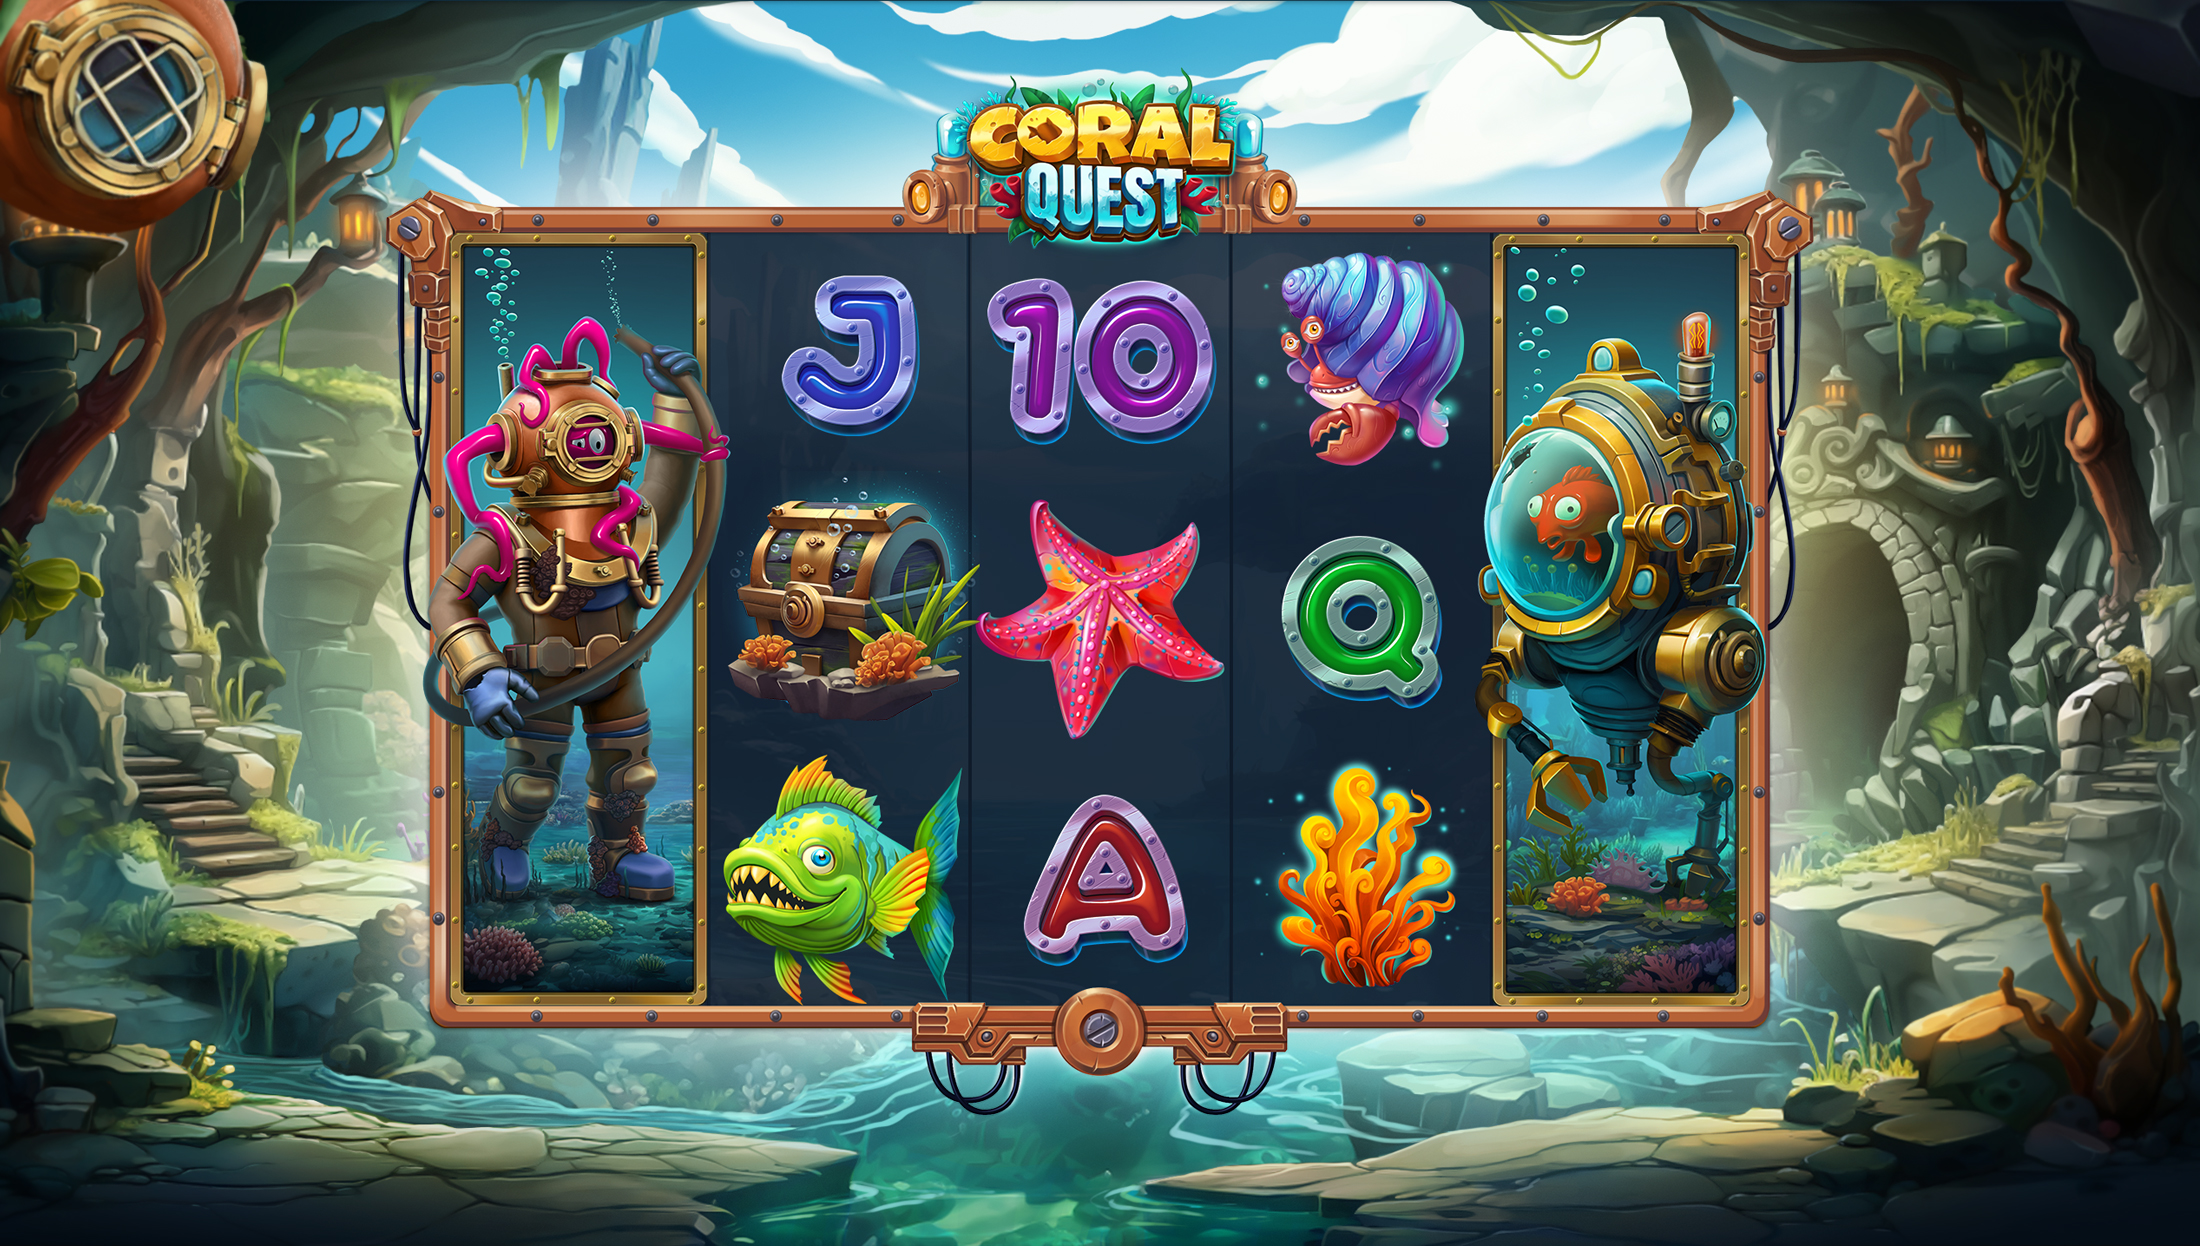 Coral Quest slot machine art